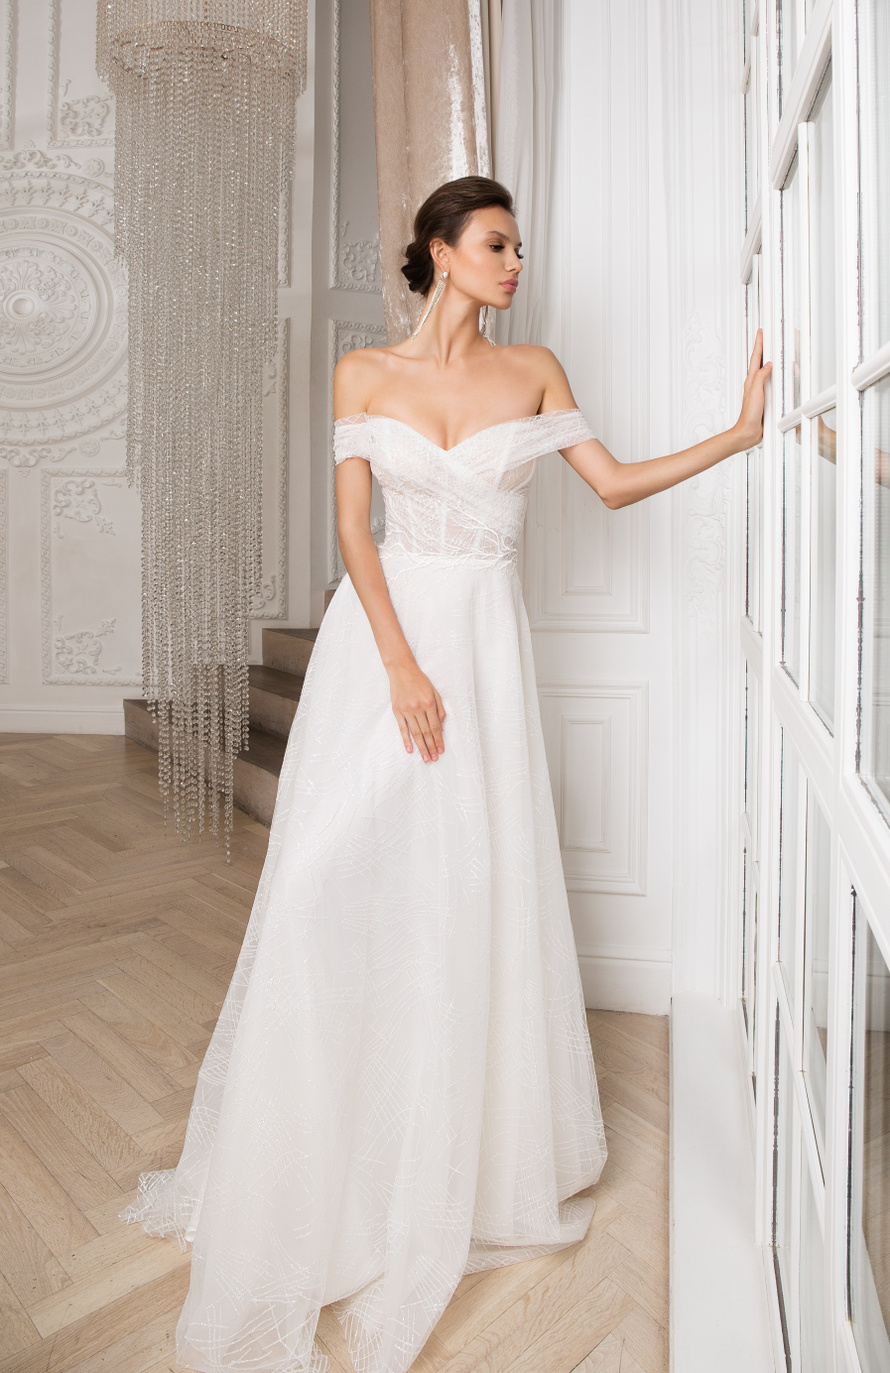 Купить свадебное платье «Ричи» Мэрри Марк из коллекции 2020 года в Краснодаре